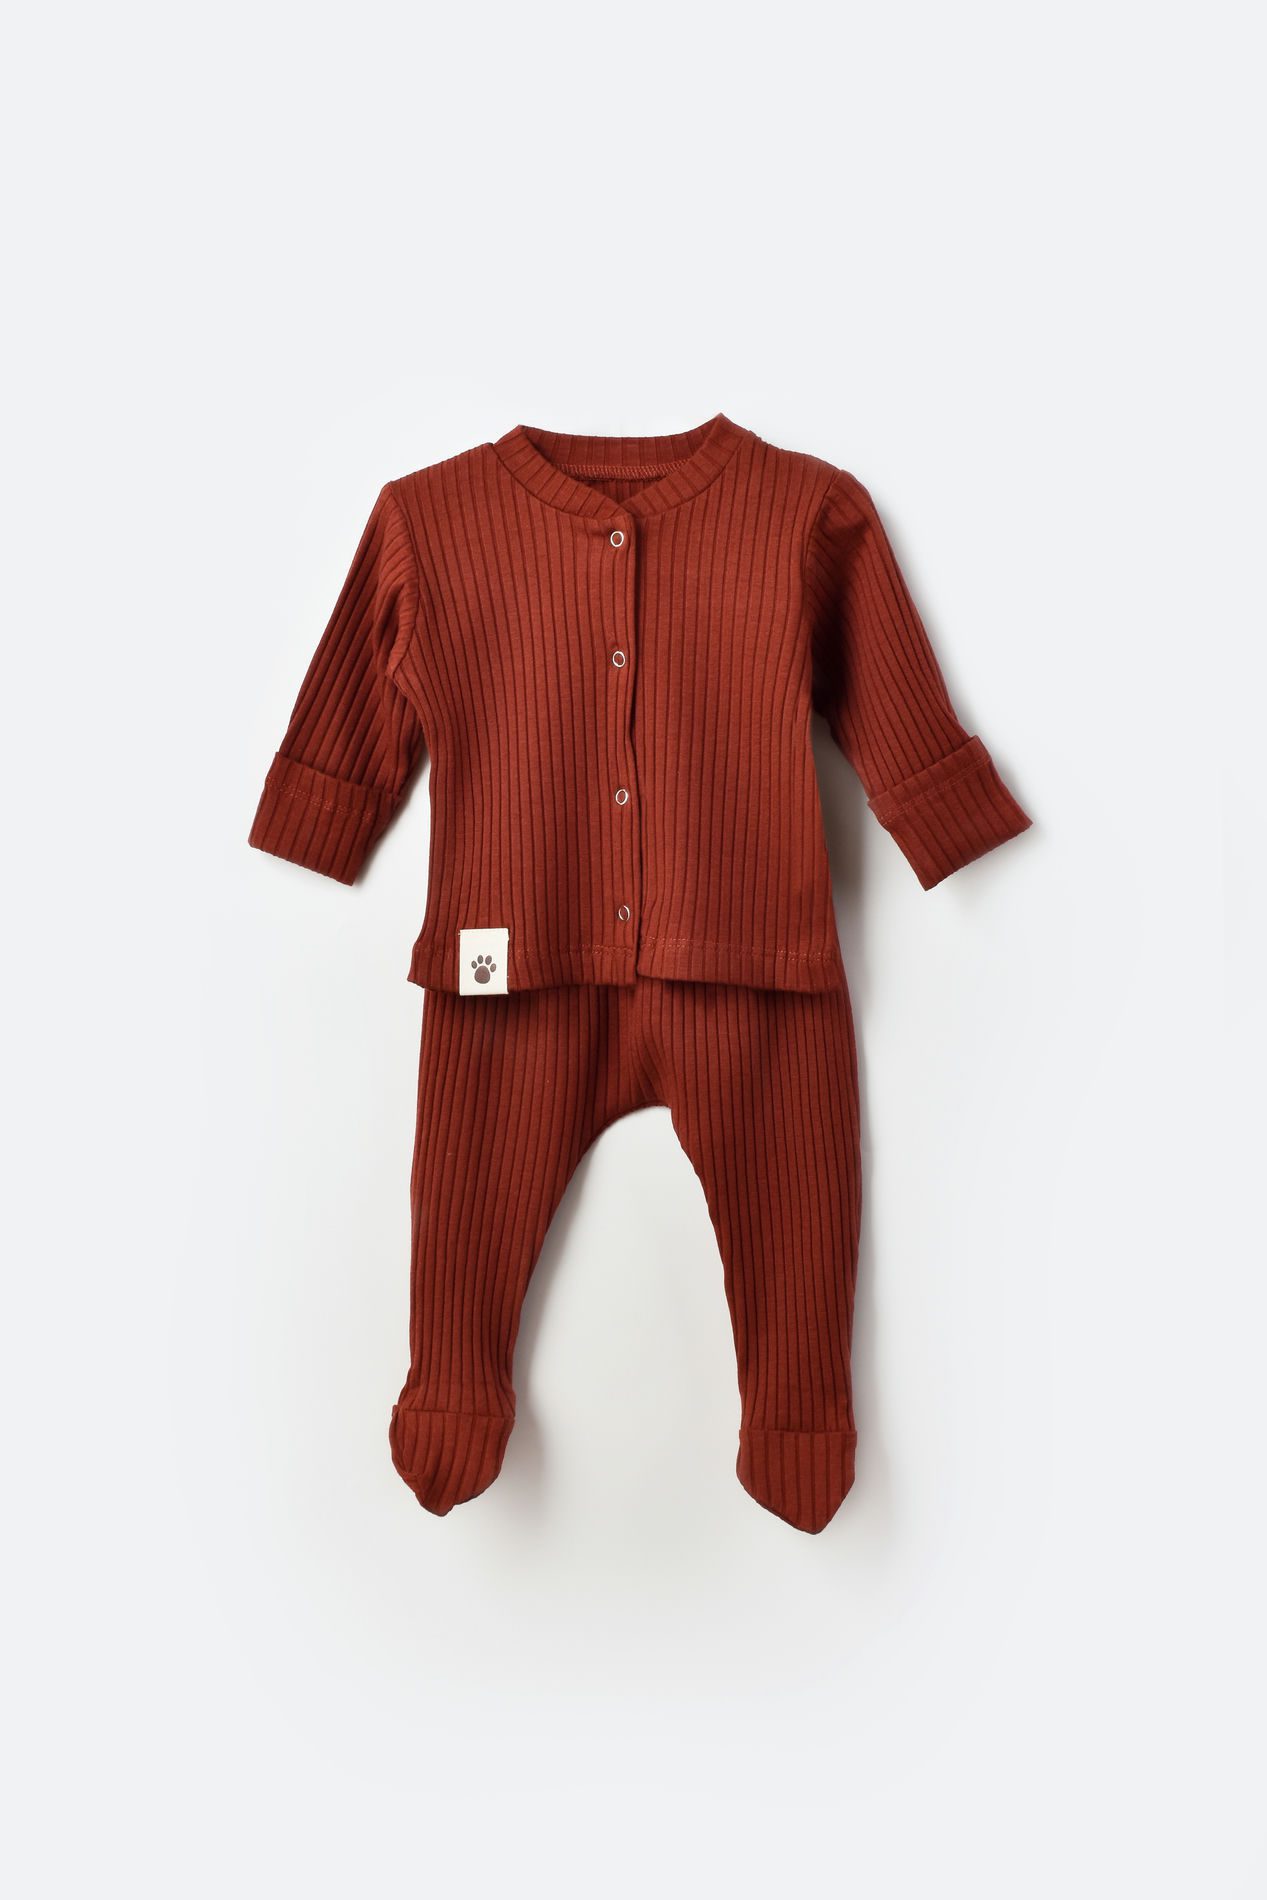 Unisex 2 Pieces Baby Track Suit Set / 0-3M | 3-6M | 6-9M | 9-12M | 12-18M - Kids Fashion Turkey